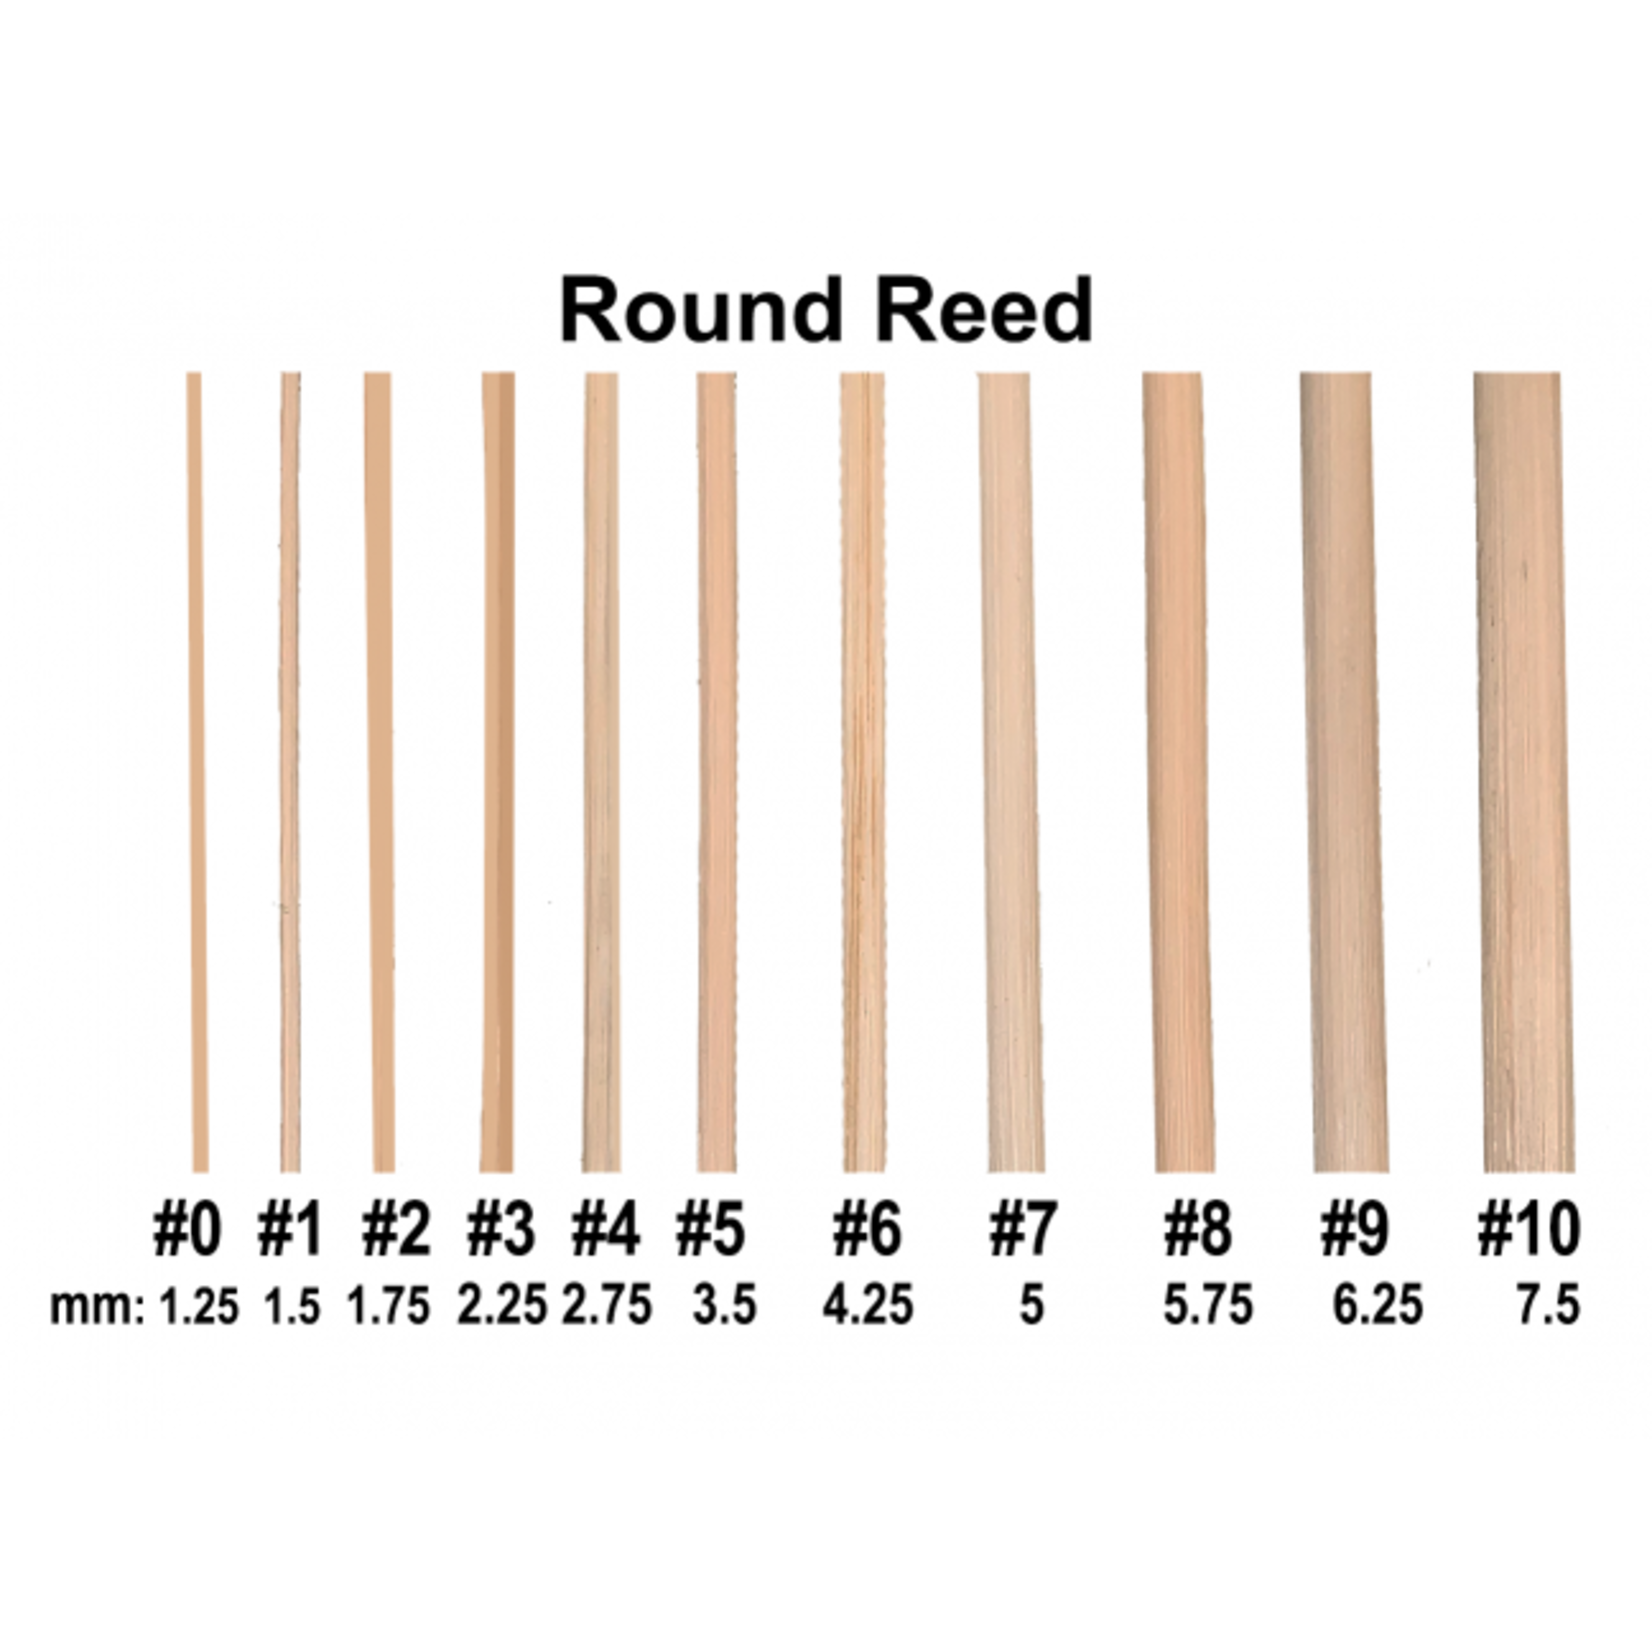 Royalwood, Ltd Round Reed Size #5